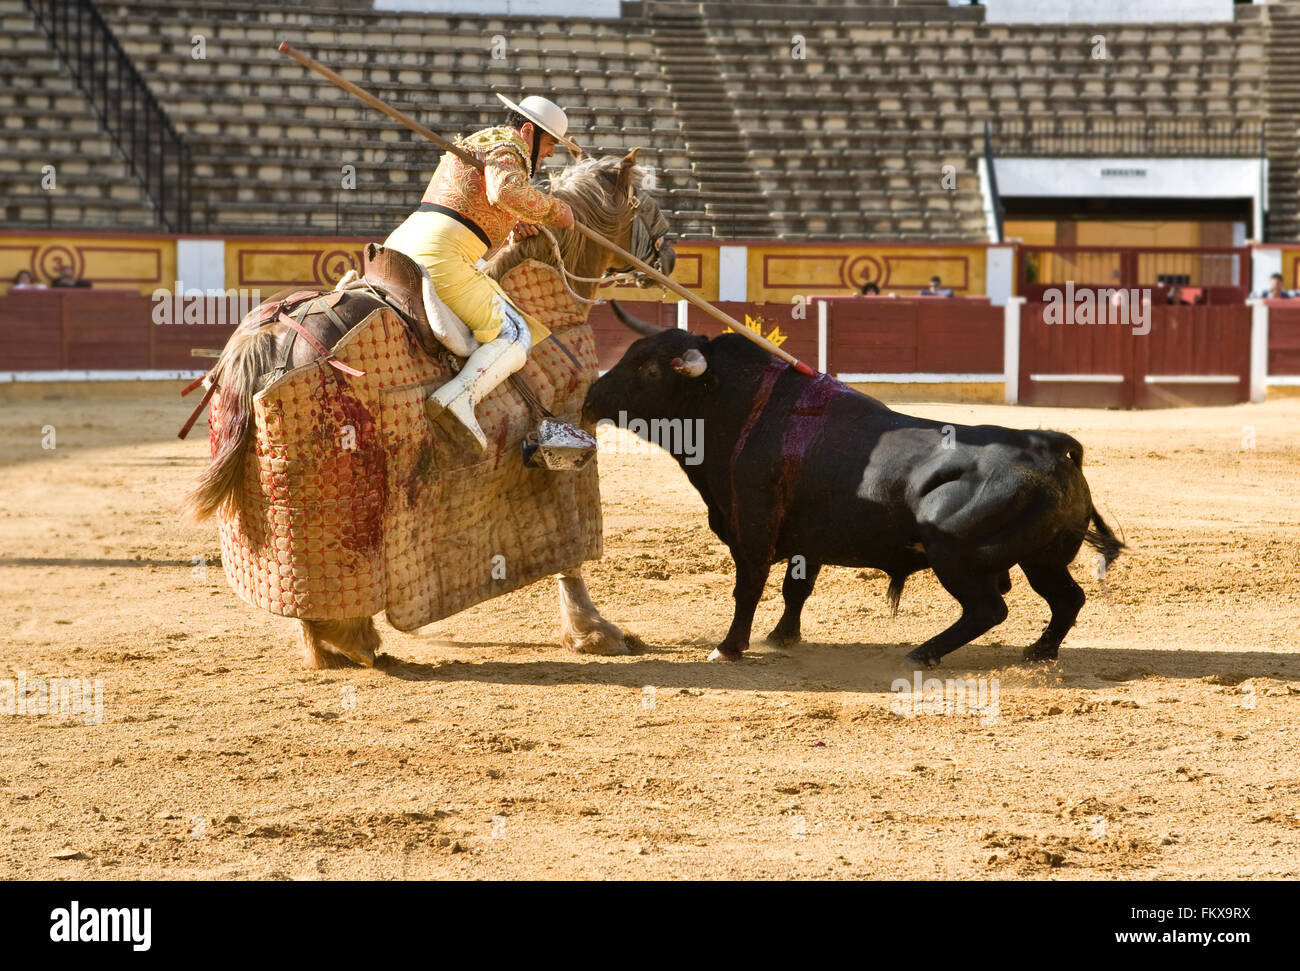 Badajoz, Spanien - Mai 11: Training hinter verschlossenen Türen am 11. Mai 2010 in Badajoz, Spanien Stierkampf. Der Lancer Verwundung des Stiers Stockfoto